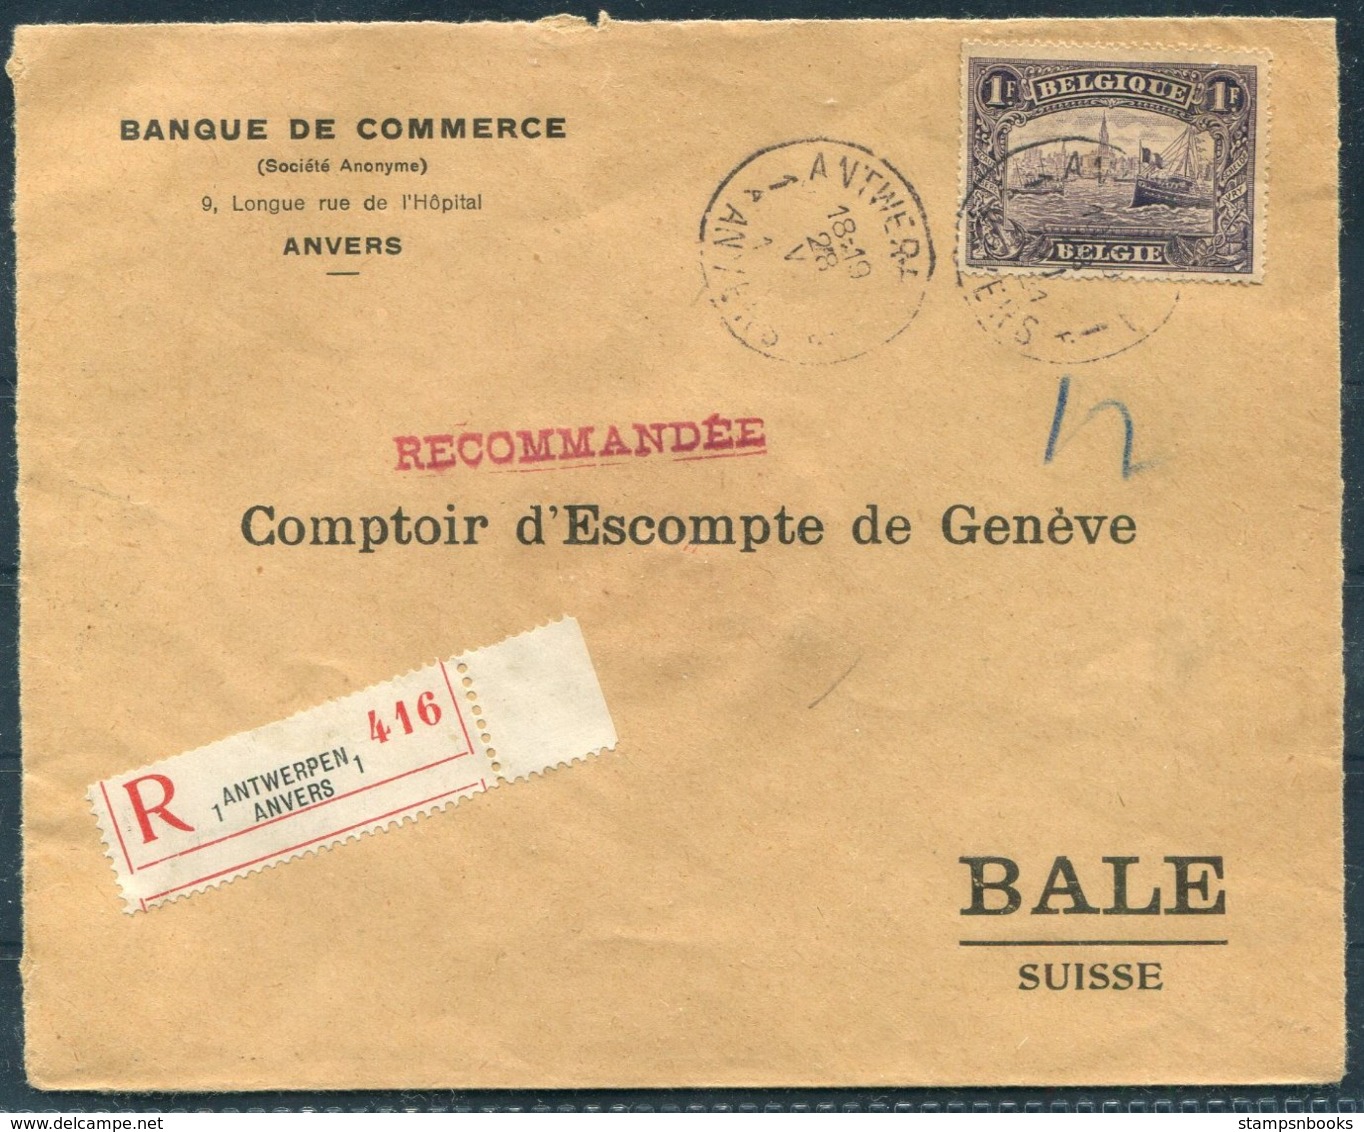 1921 Belgium Banque De Commerce, Antwerpen Registered Cover - Bale, Switzerland - Covers & Documents